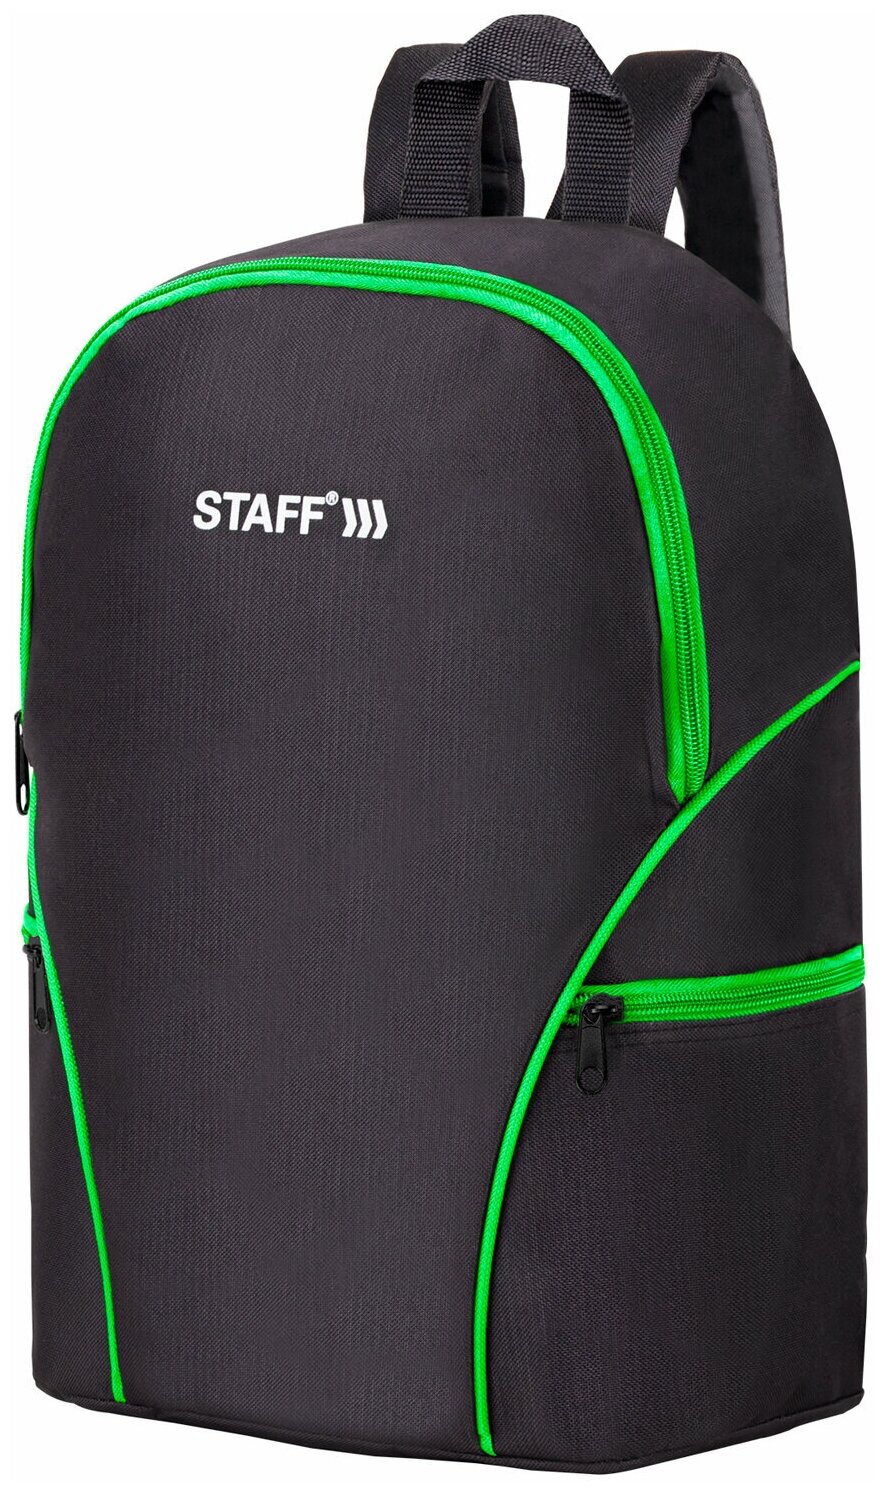 Рюкзак Staff Trip универсальный, 2 кармана, черный с салатовыми деталями, 40x27x15,5 см (270788)